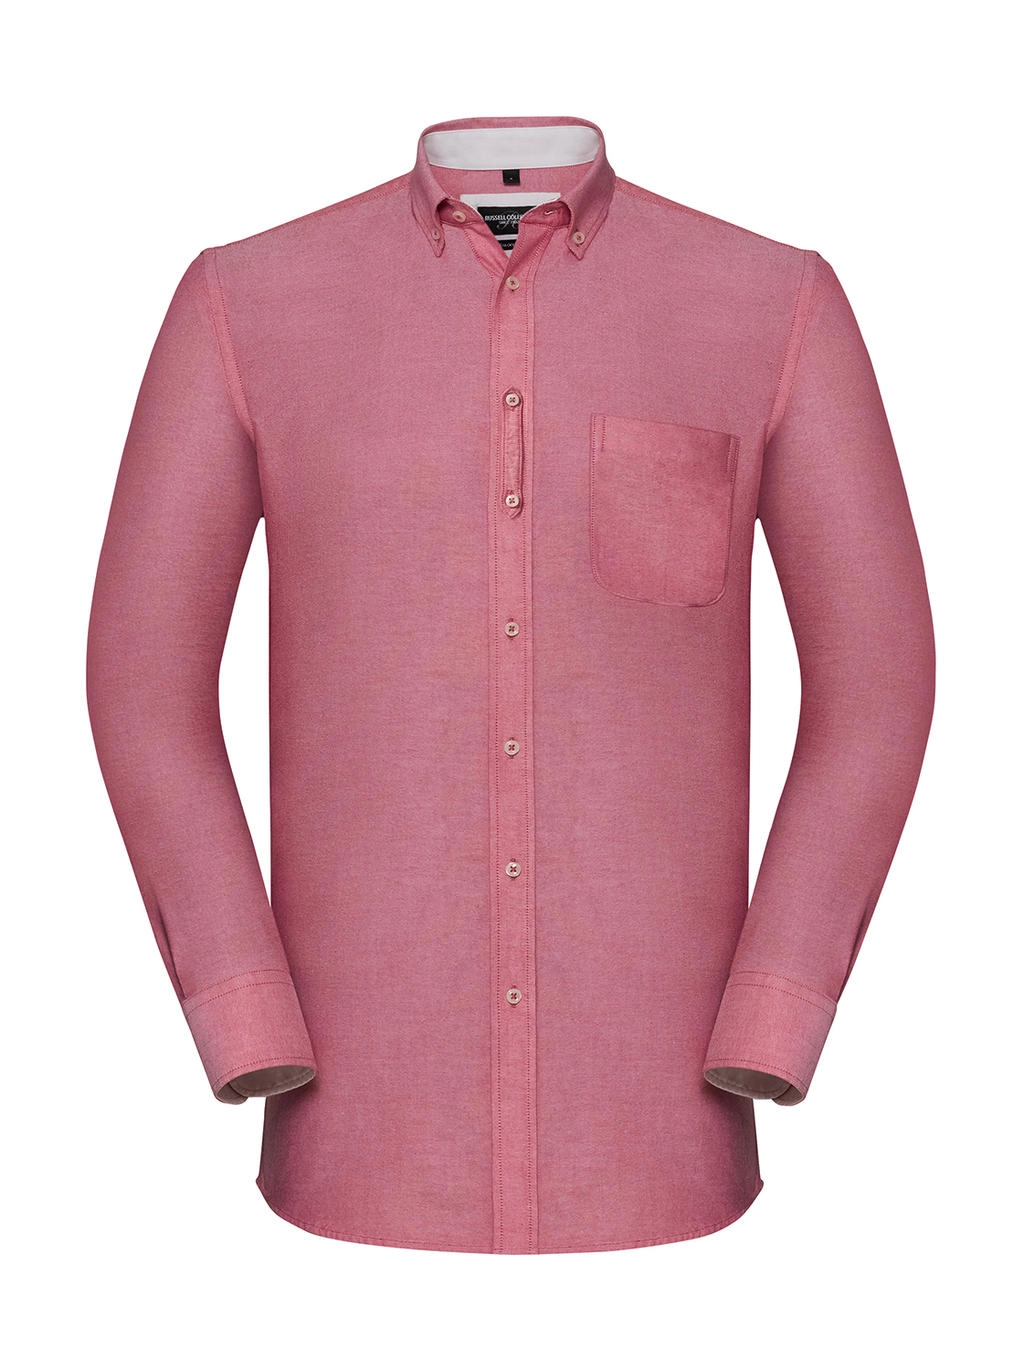 Men`s LS Tailored Washed Oxford Shirt zum Besticken und Bedrucken in der Farbe Oxford Red/Cream mit Ihren Logo, Schriftzug oder Motiv.